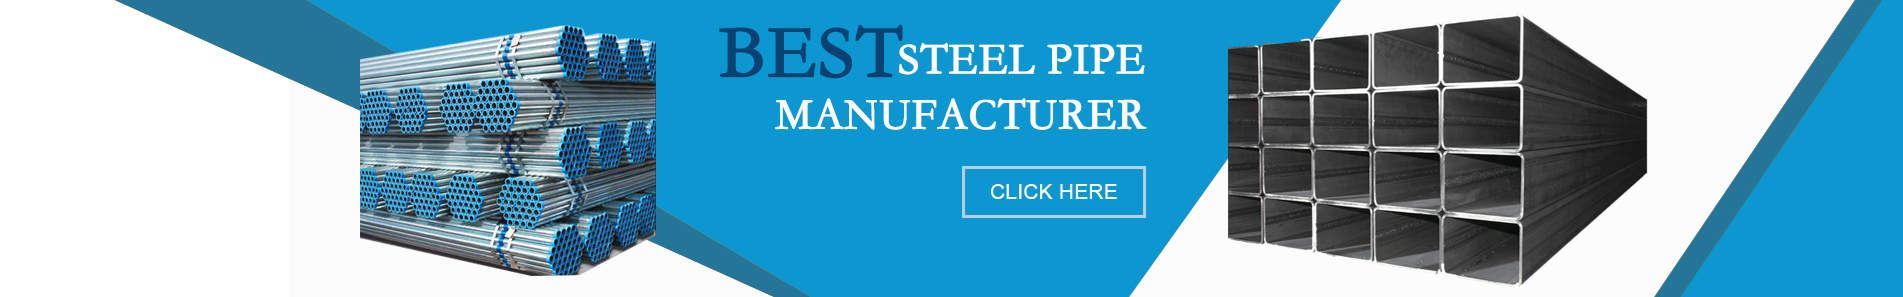 steel-pipe